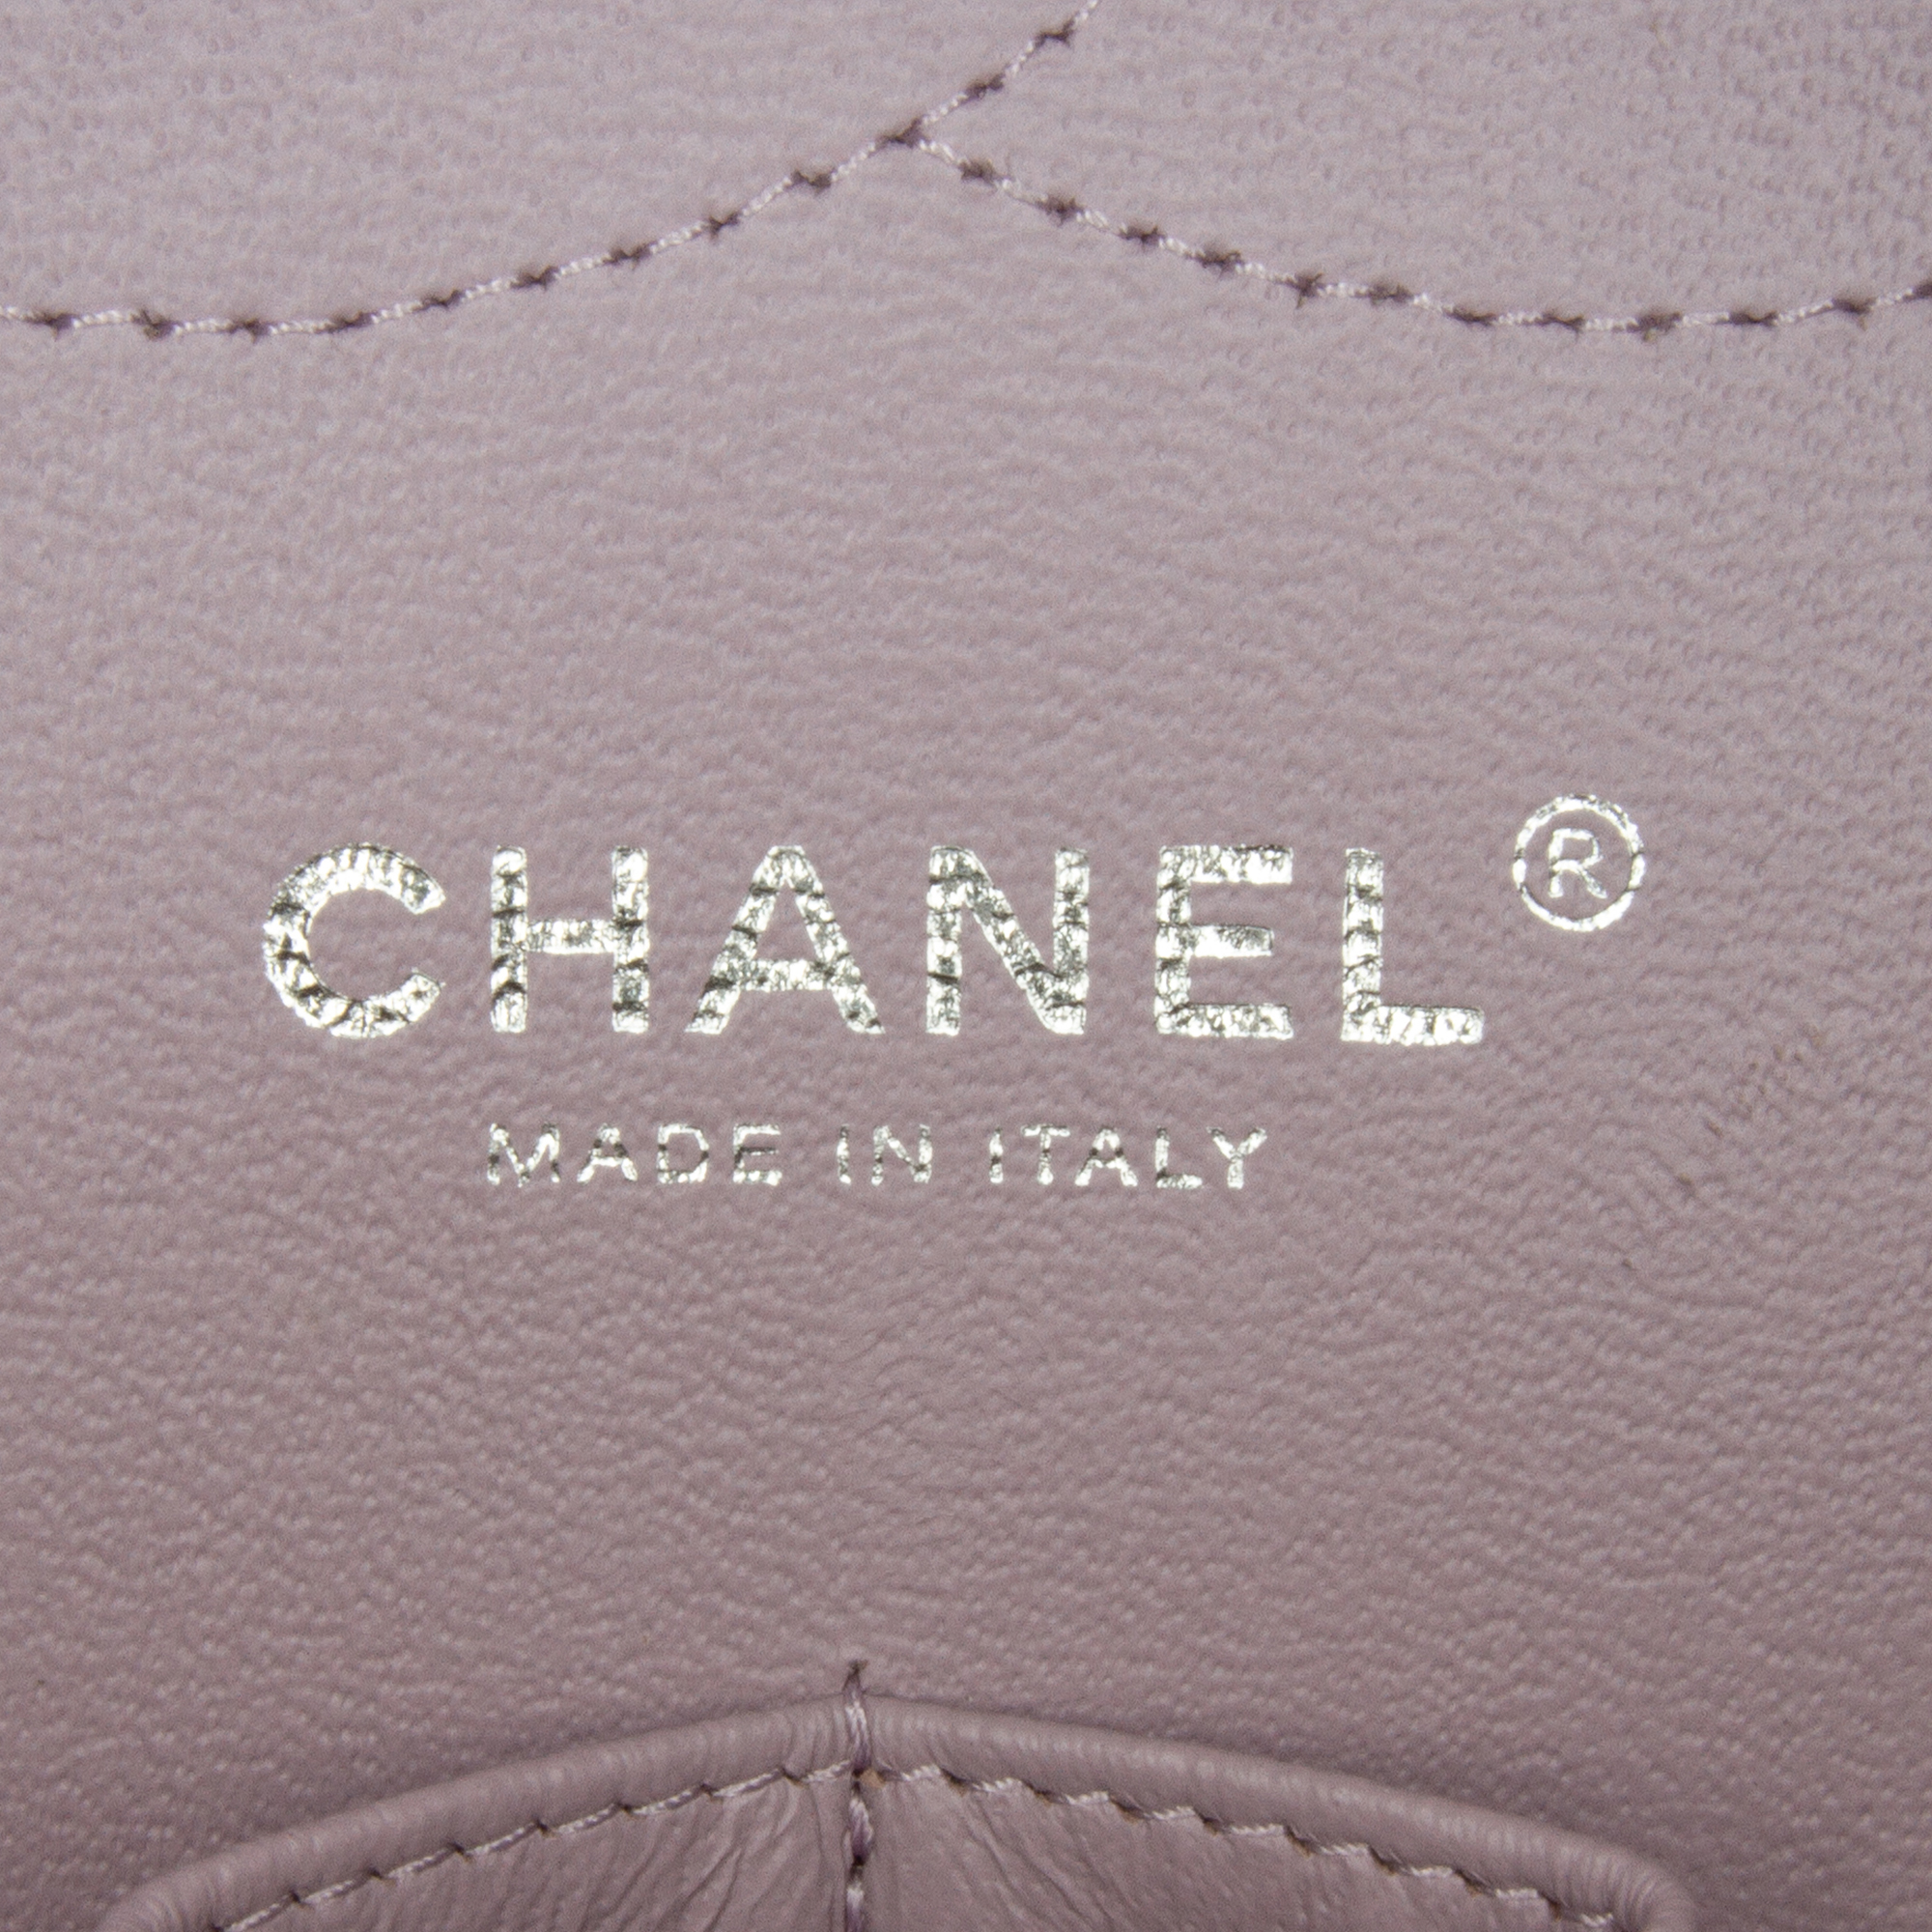 Chanel Jumbo Classic Lambskin Double Flap - Image 9 of 19